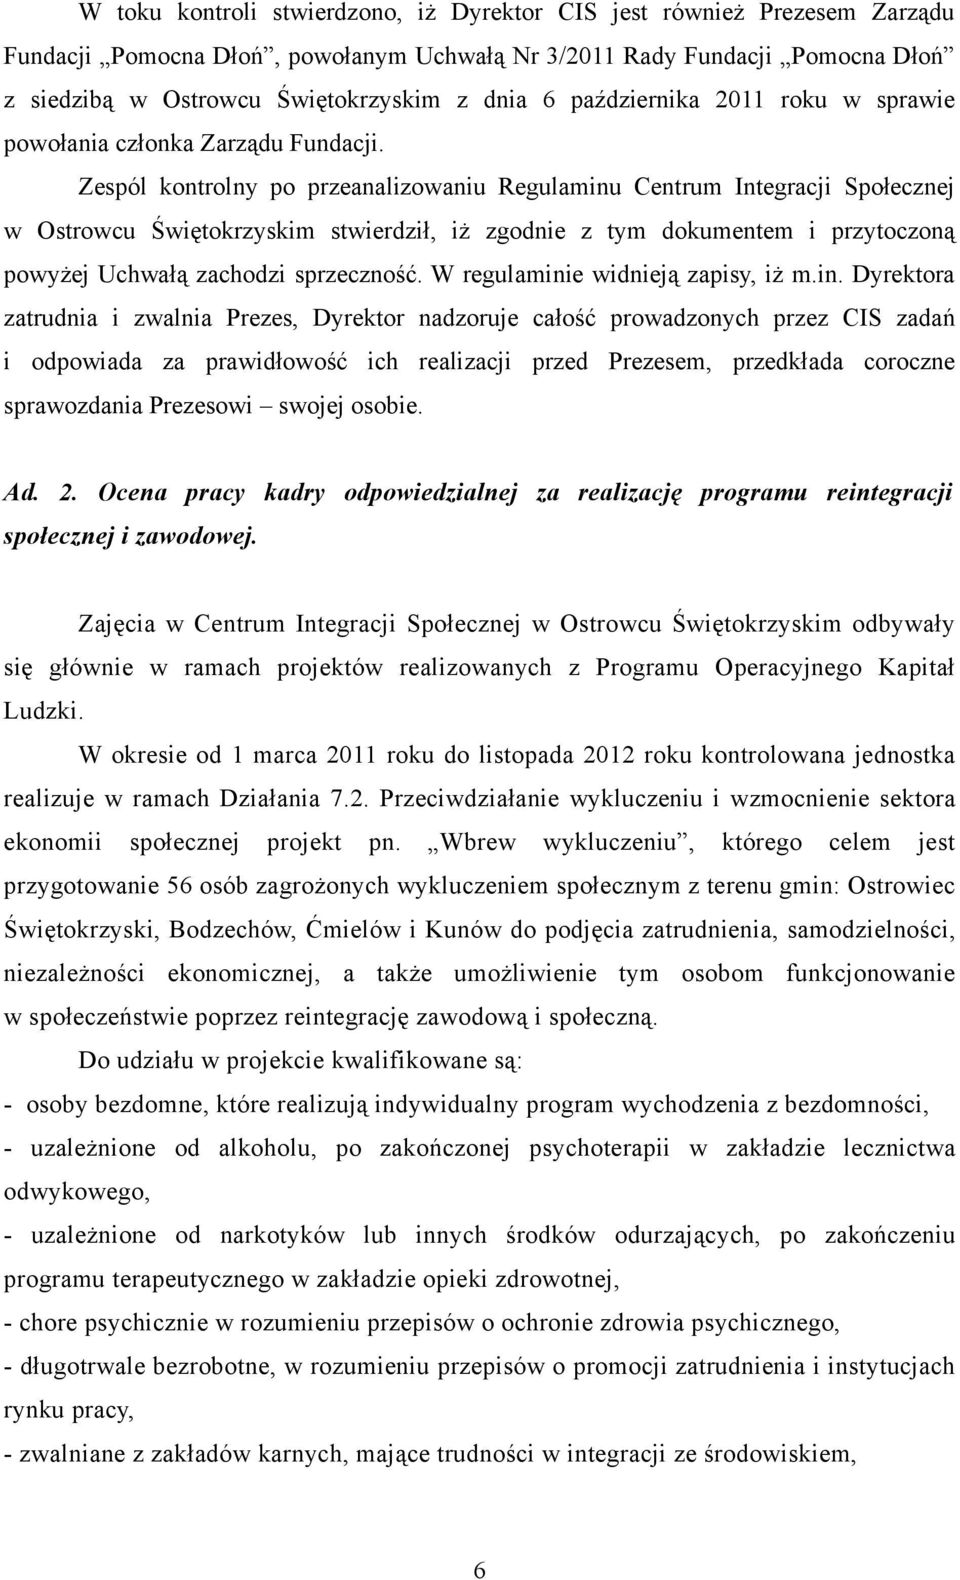 Zespól kontrolny po przeanalizowaniu Regulaminu Centrum Integracji Społecznej w Ostrowcu Świętokrzyskim stwierdził, iż zgodnie z tym dokumentem i przytoczoną powyżej Uchwałą zachodzi sprzeczność.